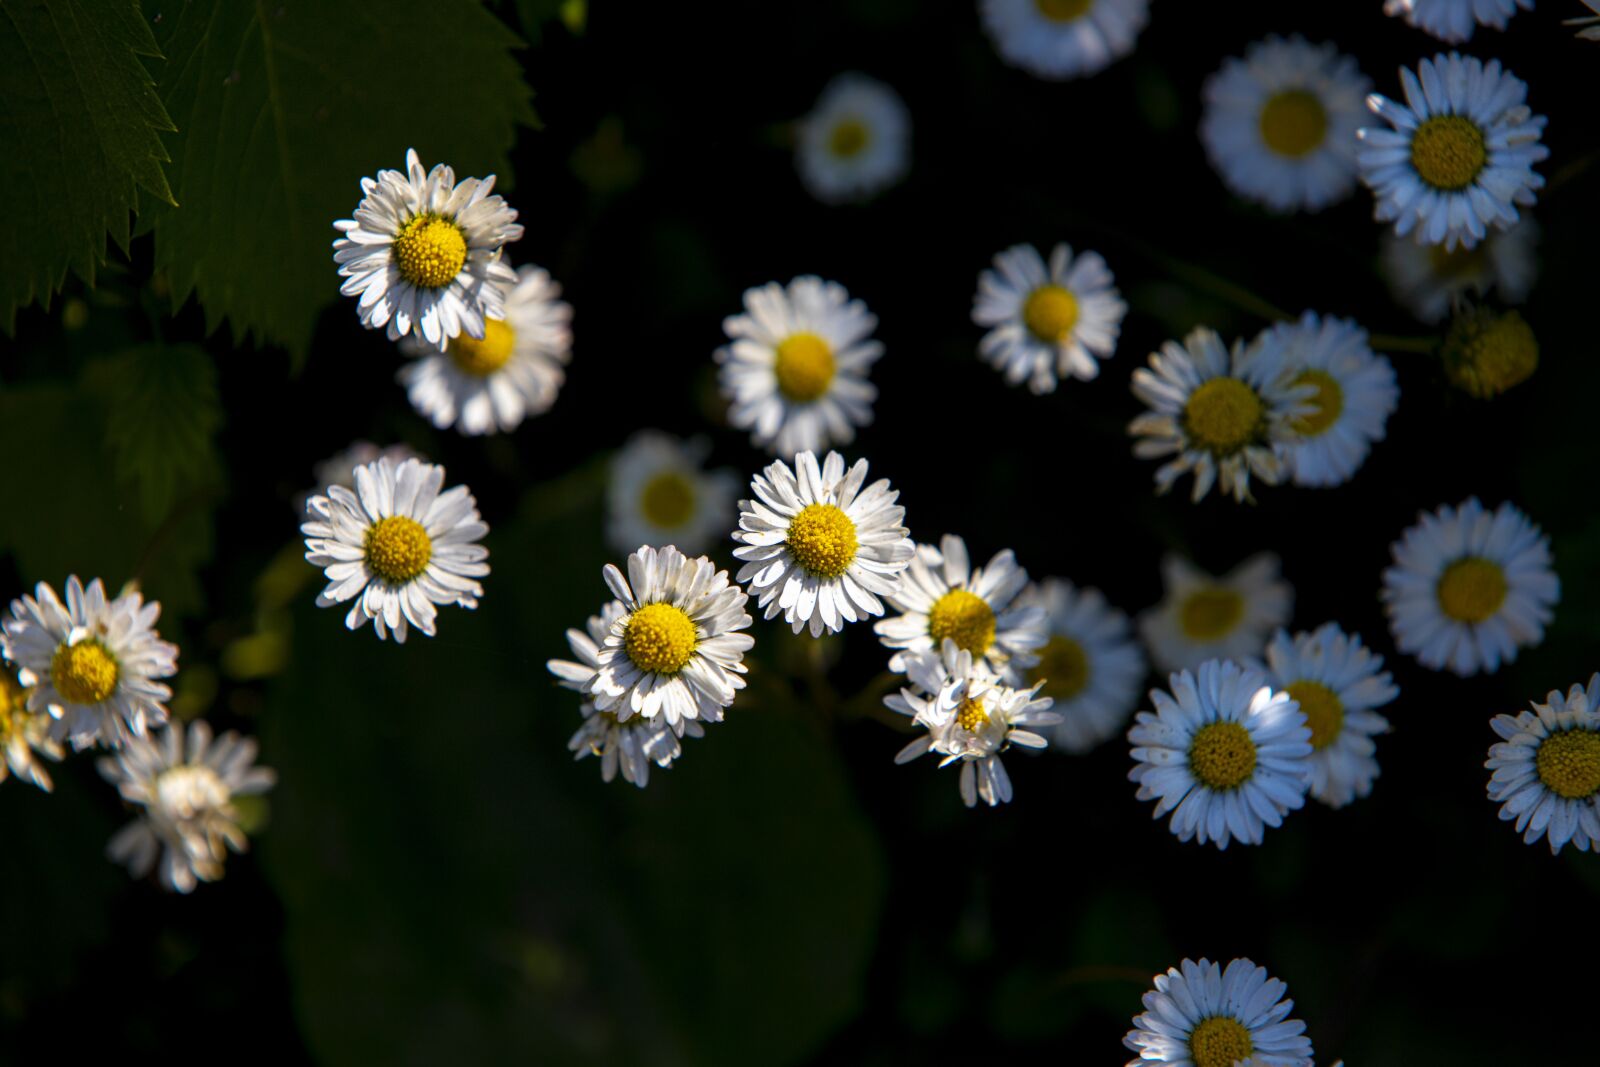 Canon EOS 6D Mark II sample photo. Flowers, daisies, daisy photography